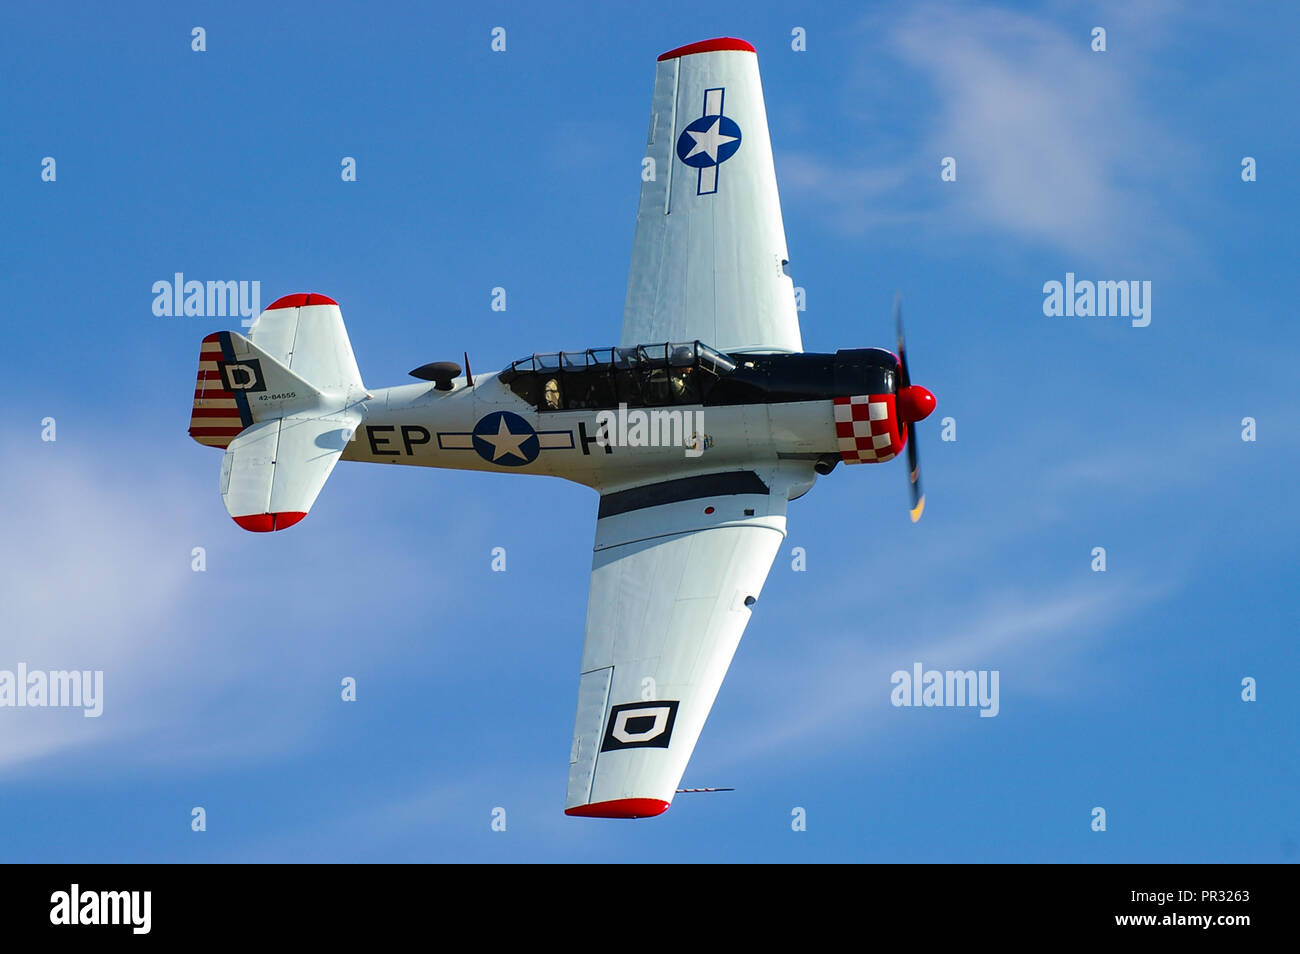 North American T-6 Harvard, Texan, propriété de Maurice Hammond volant dans un ciel bleu lors d'un spectacle aérien Banque D'Images